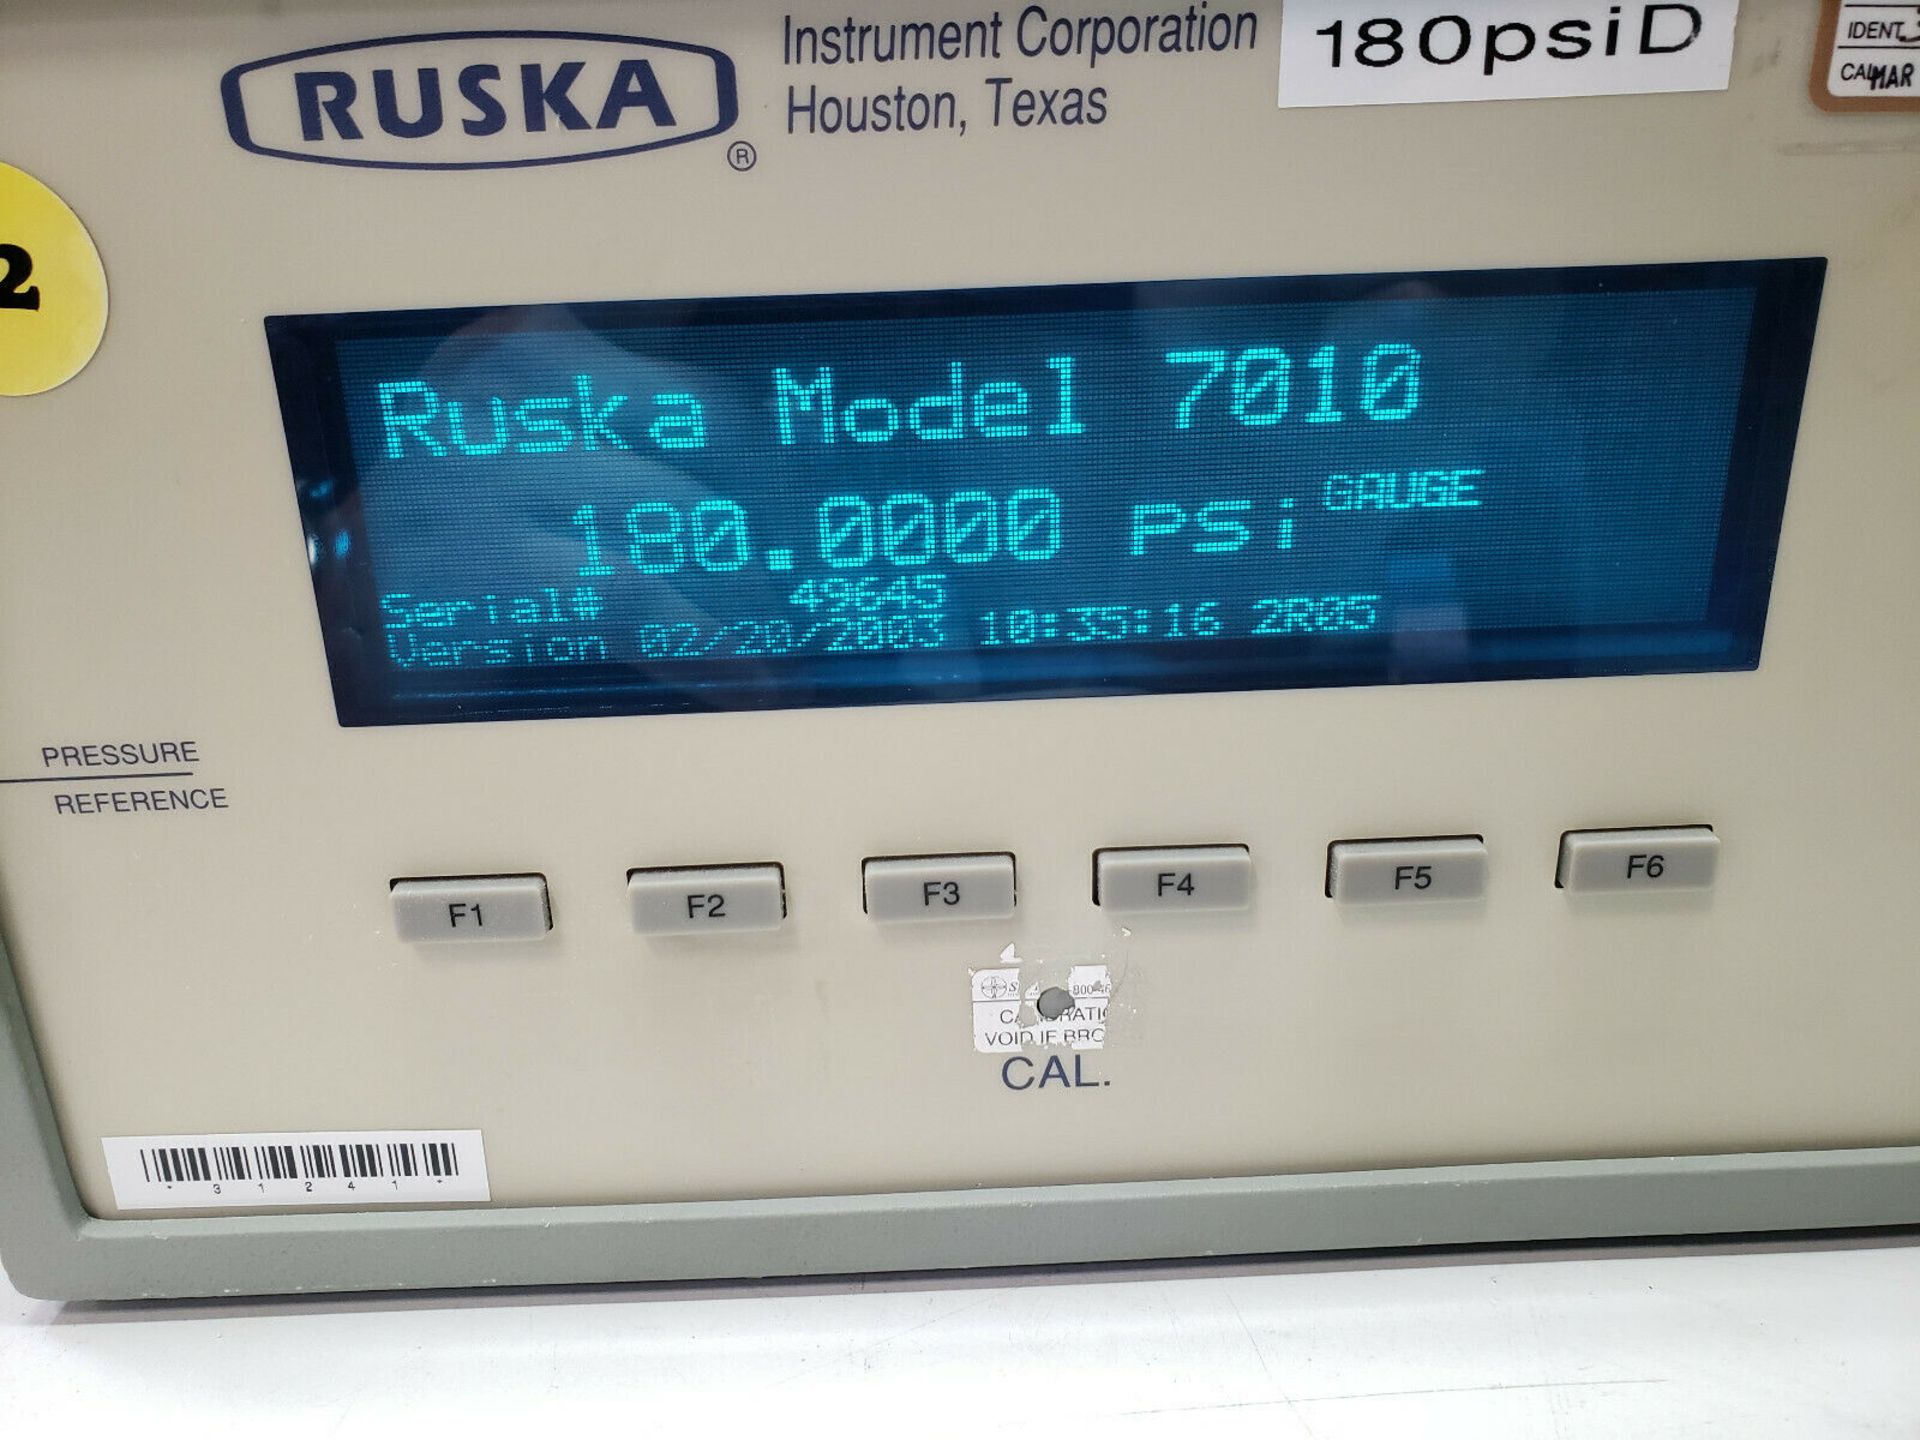 Ruska Model 7010 Digital Pressure Controller - Image 6 of 7